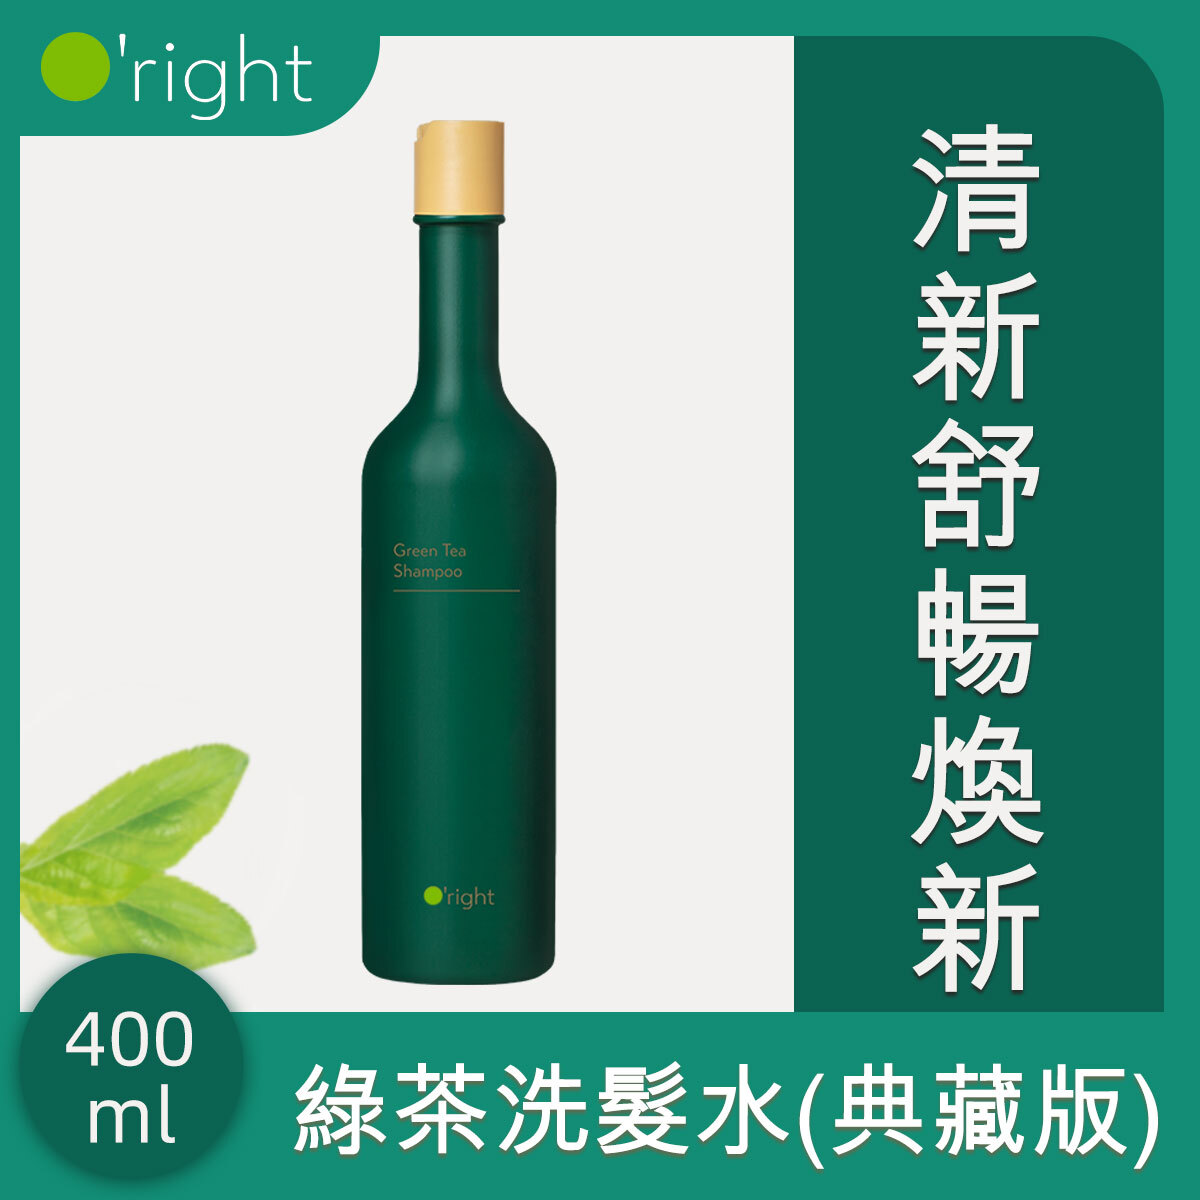 歐萊德 | Green Tea Shampoo 400ml (Forest Green)